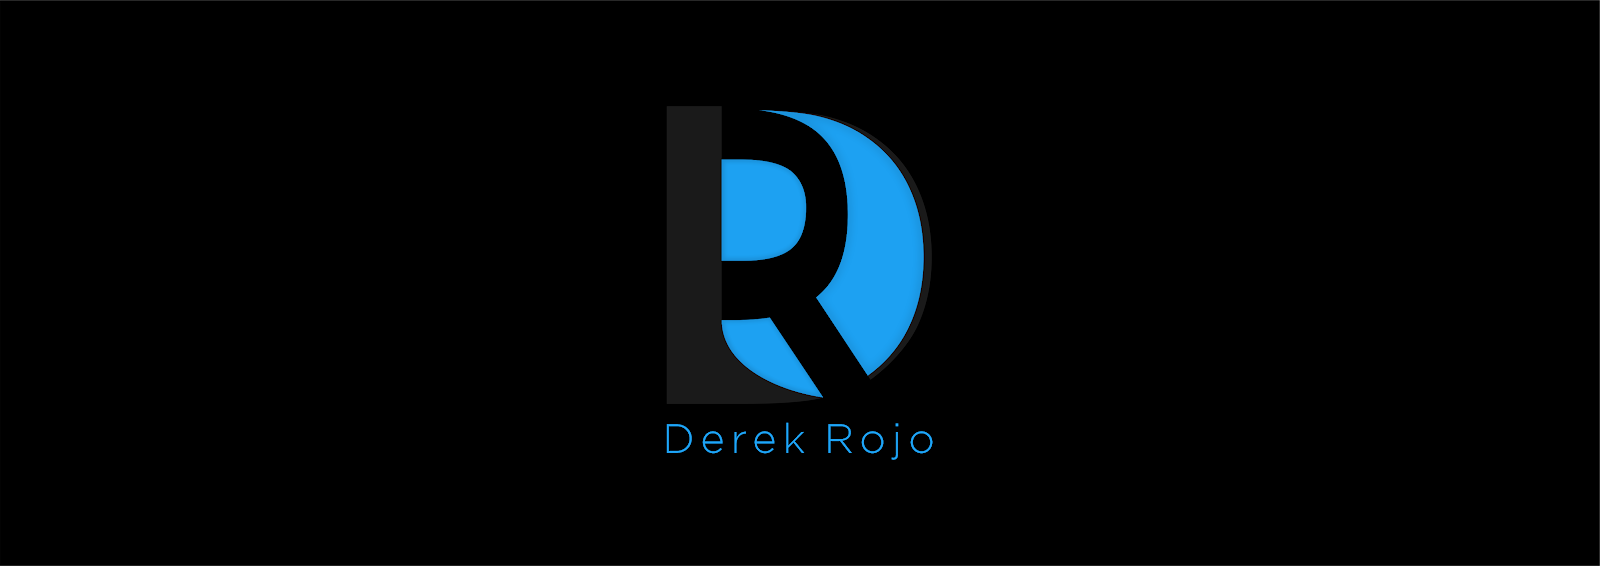 Derek Rojo